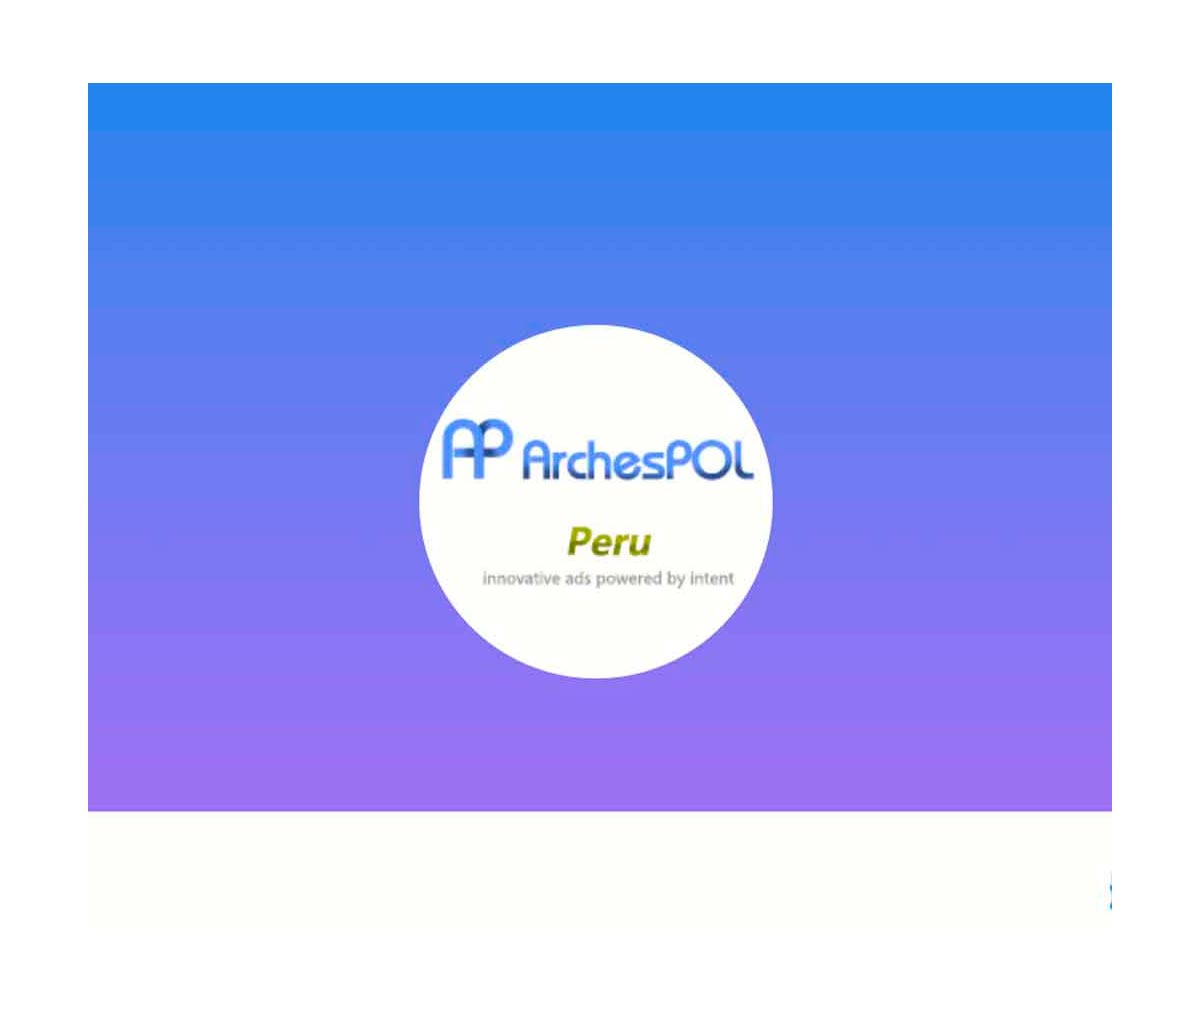 Página web de ArchesPOL